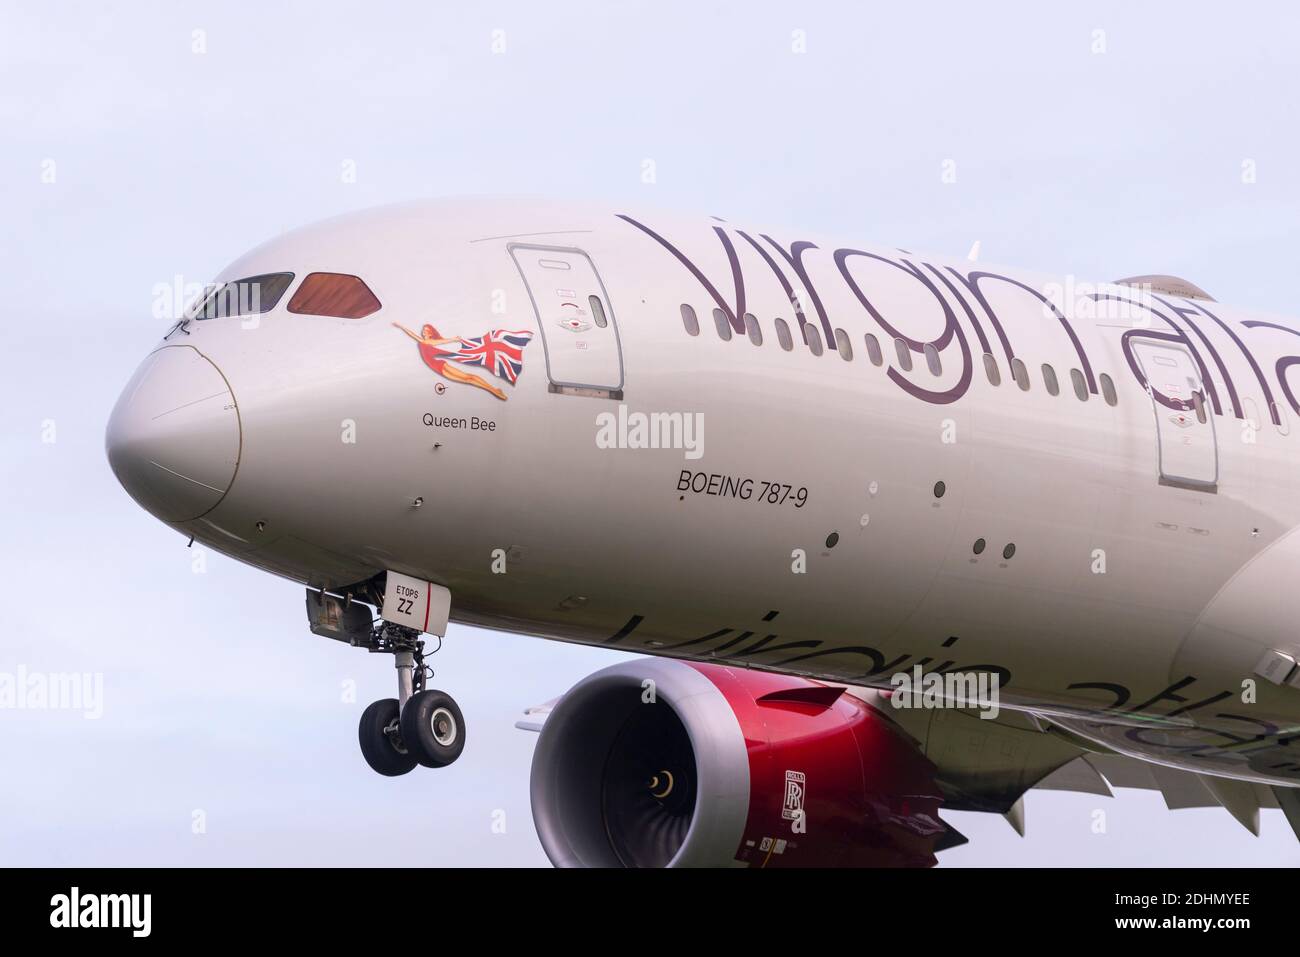 Virgin Atlantic Boeing 787 l'avion de ligne à réaction Dreamliner G-VBZZ débarquant à l'aéroport de Londres Heathrow, au Royaume-Uni, nommé Queen Bee. Illustration du nez de la dame écarlate Banque D'Images